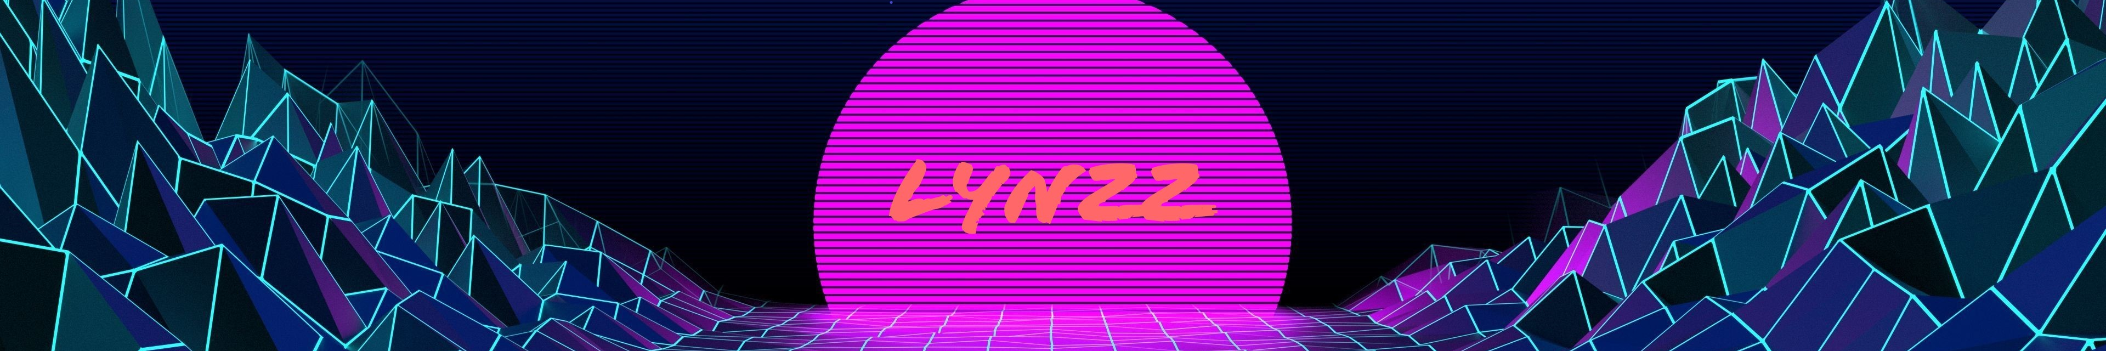 Lynzz